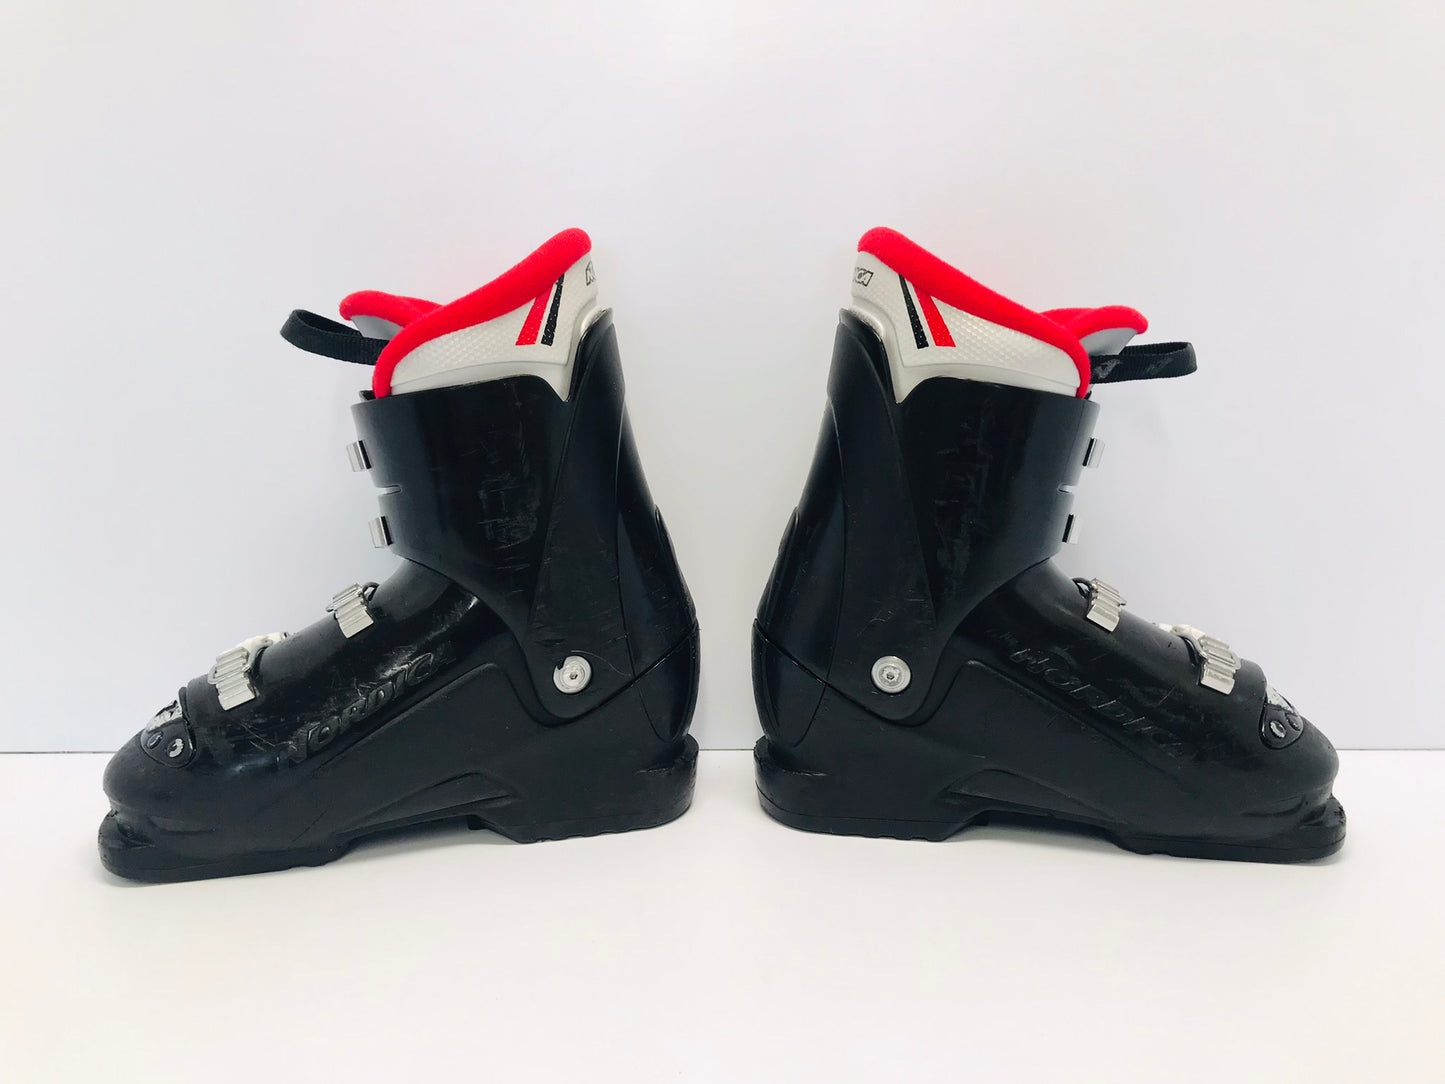 Ski Boots Mondo Size 23.0 Child Size 5-6  270 mm Nordica Black Red